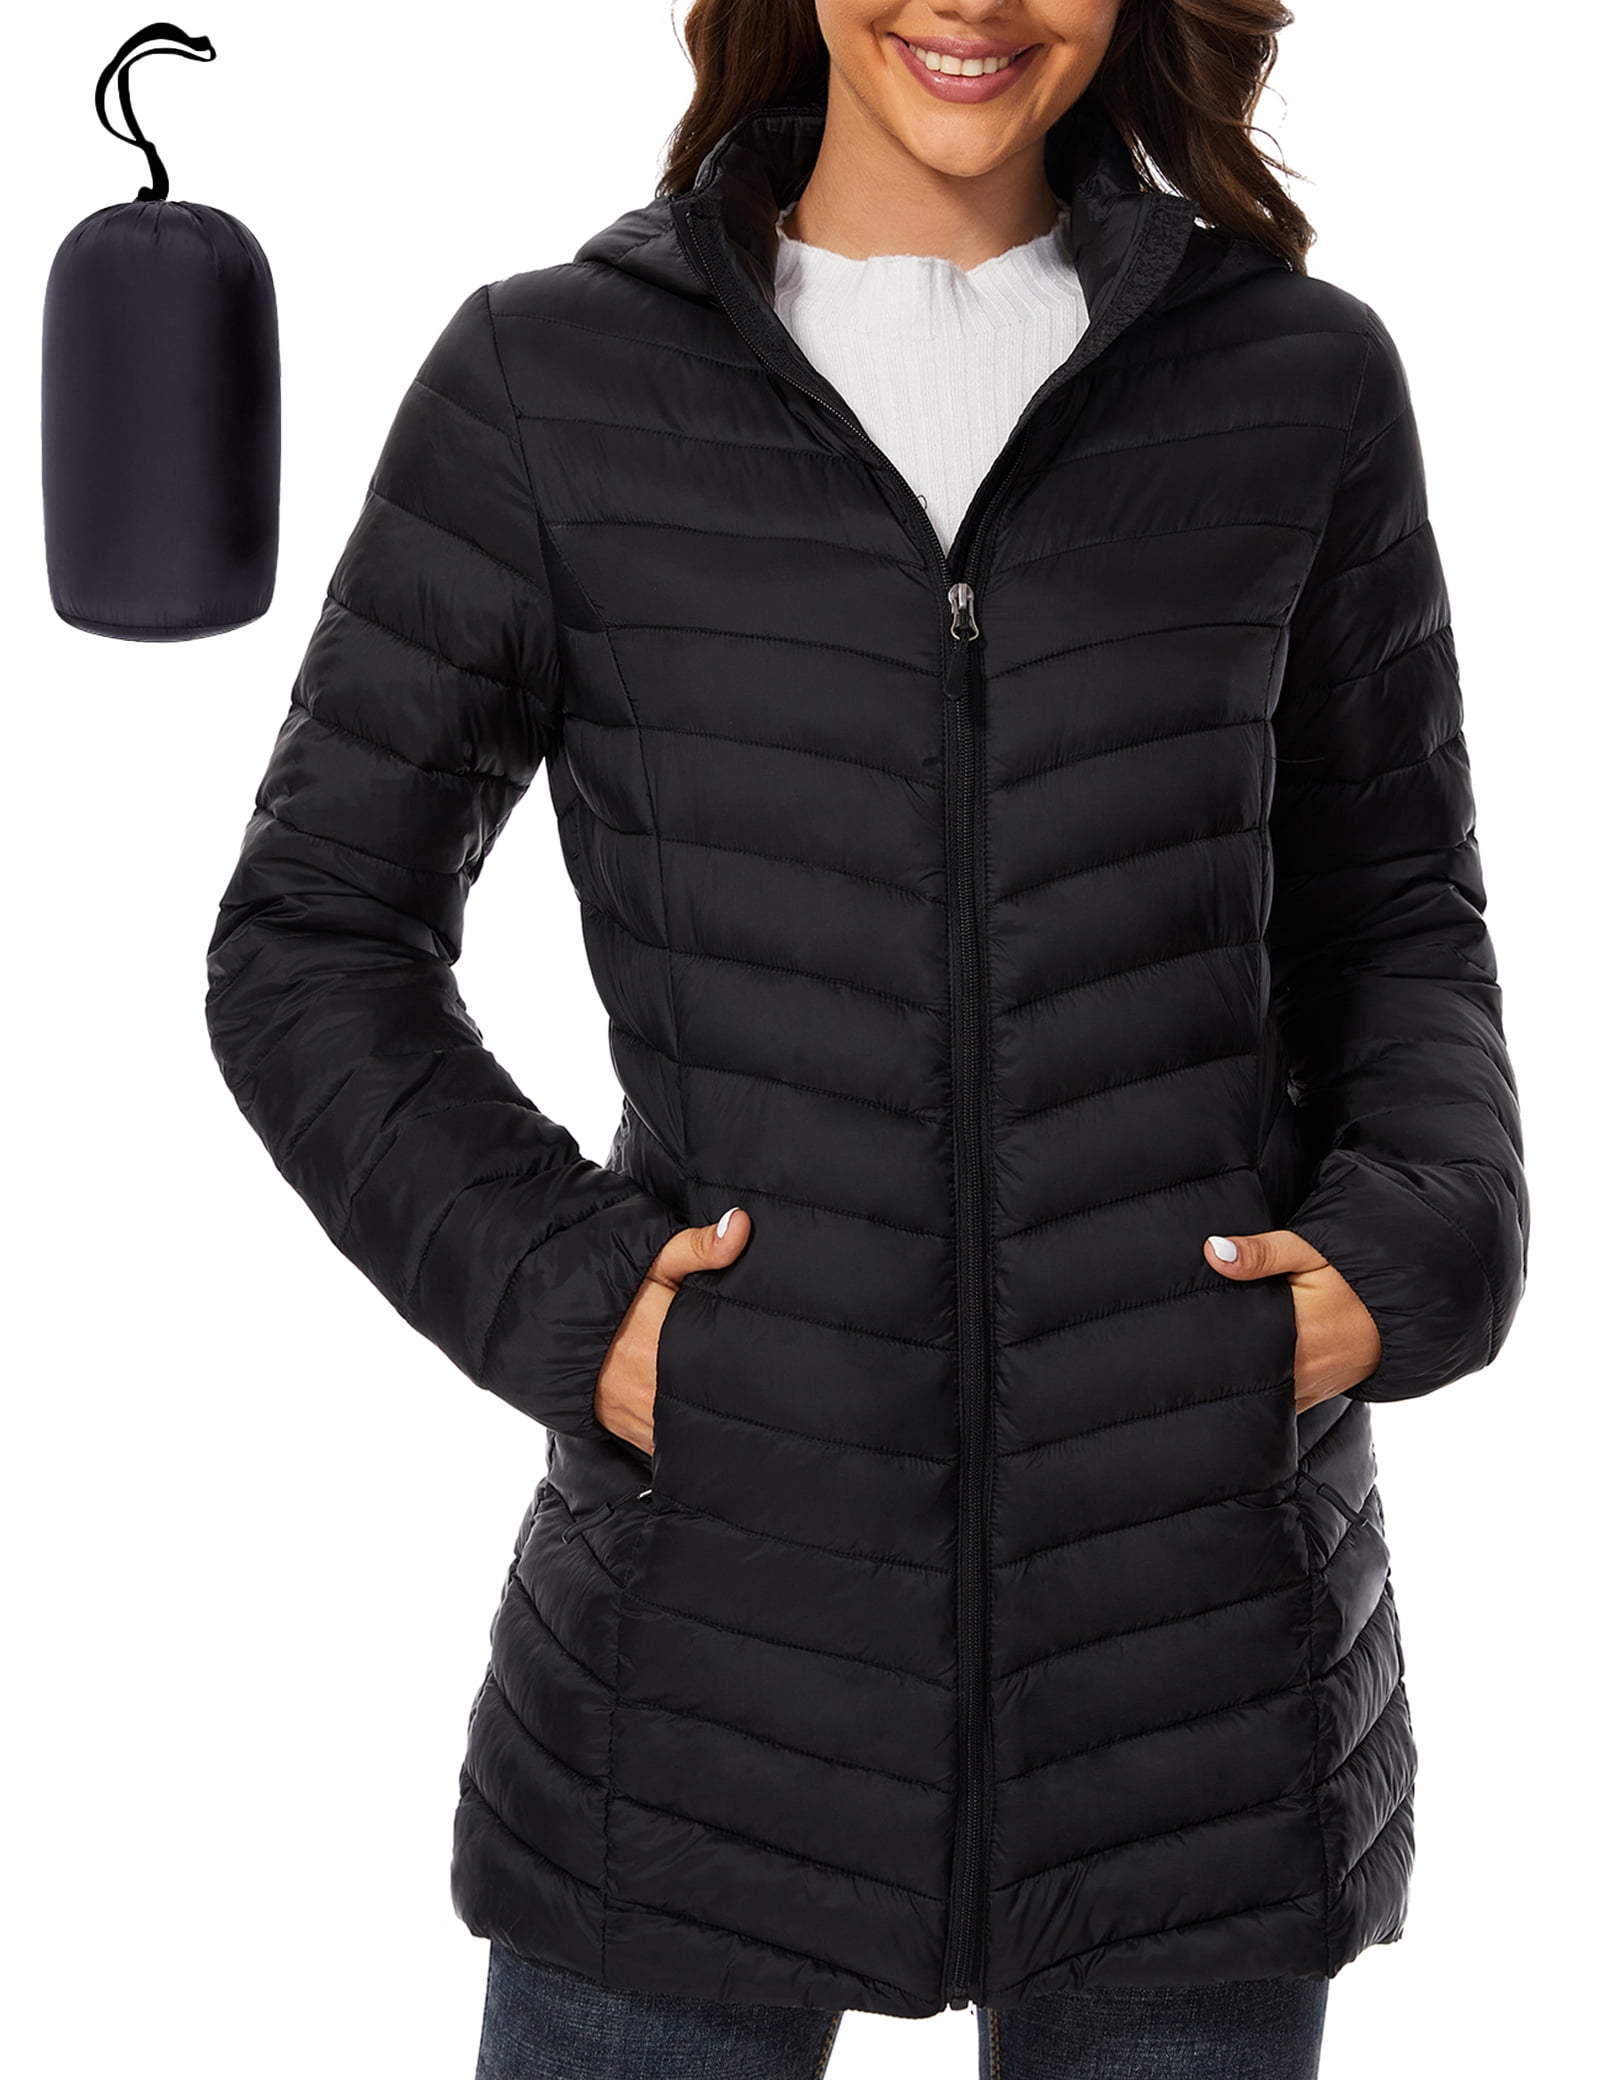 Women Puffer Jacket Hooded Warm Lightweight Packable Quilted Puffer ...